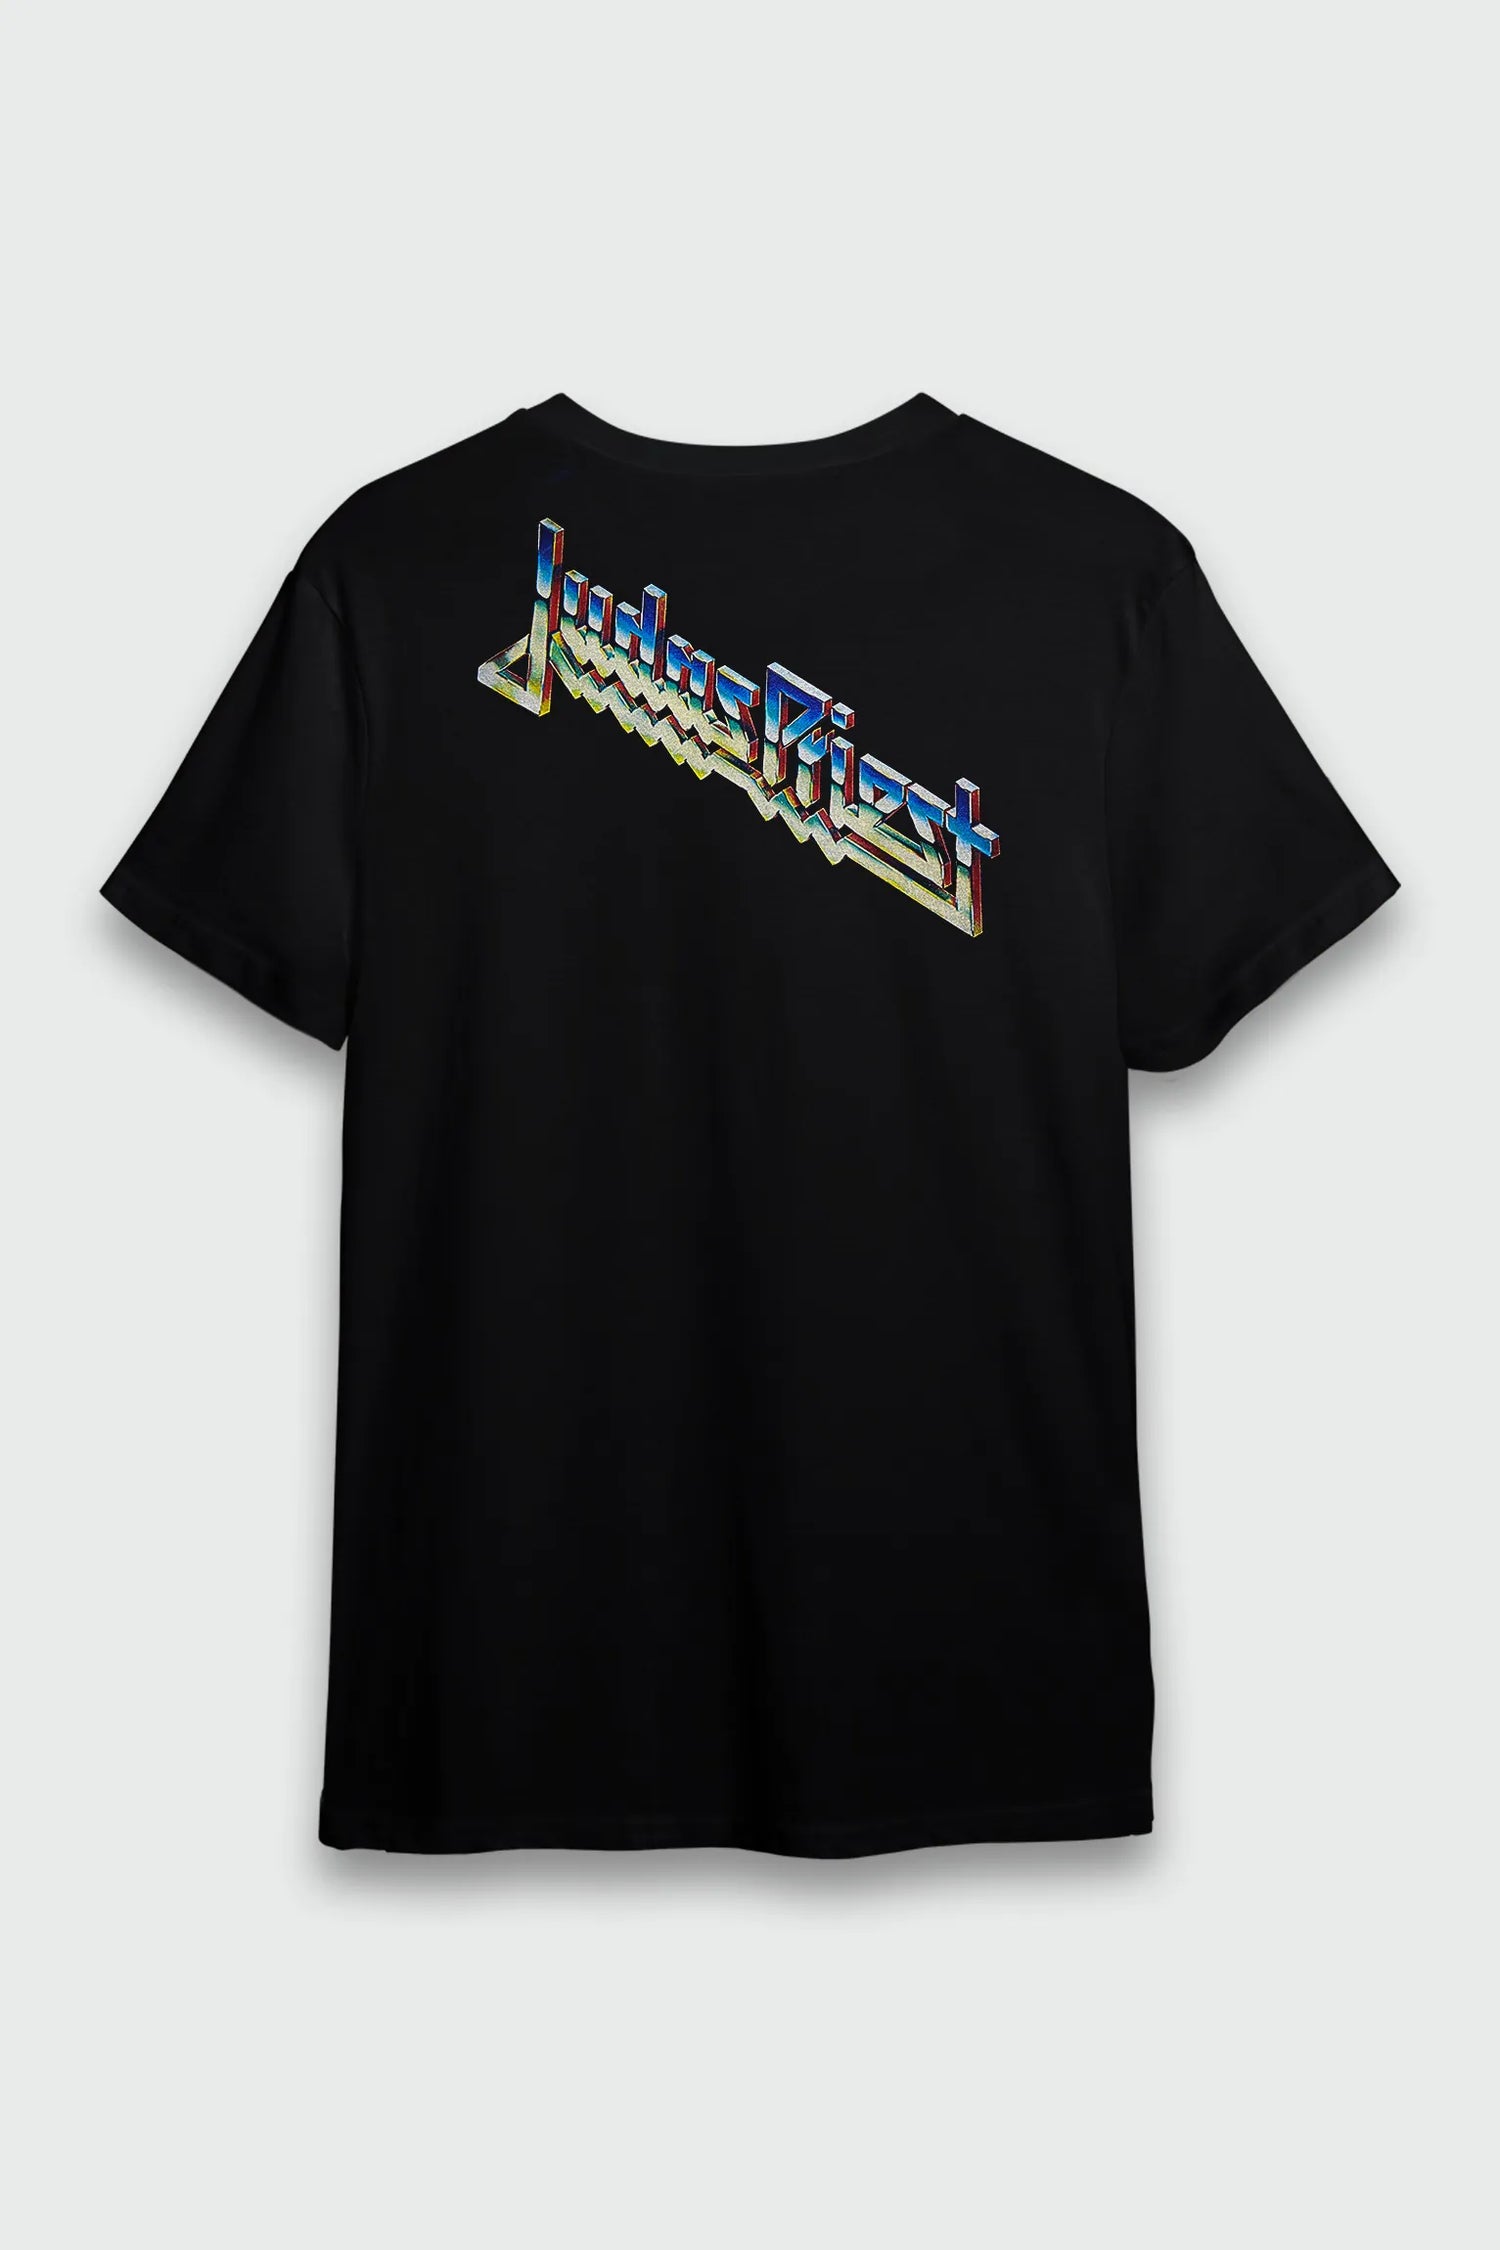 Camiseta Judas Priest Painkiller